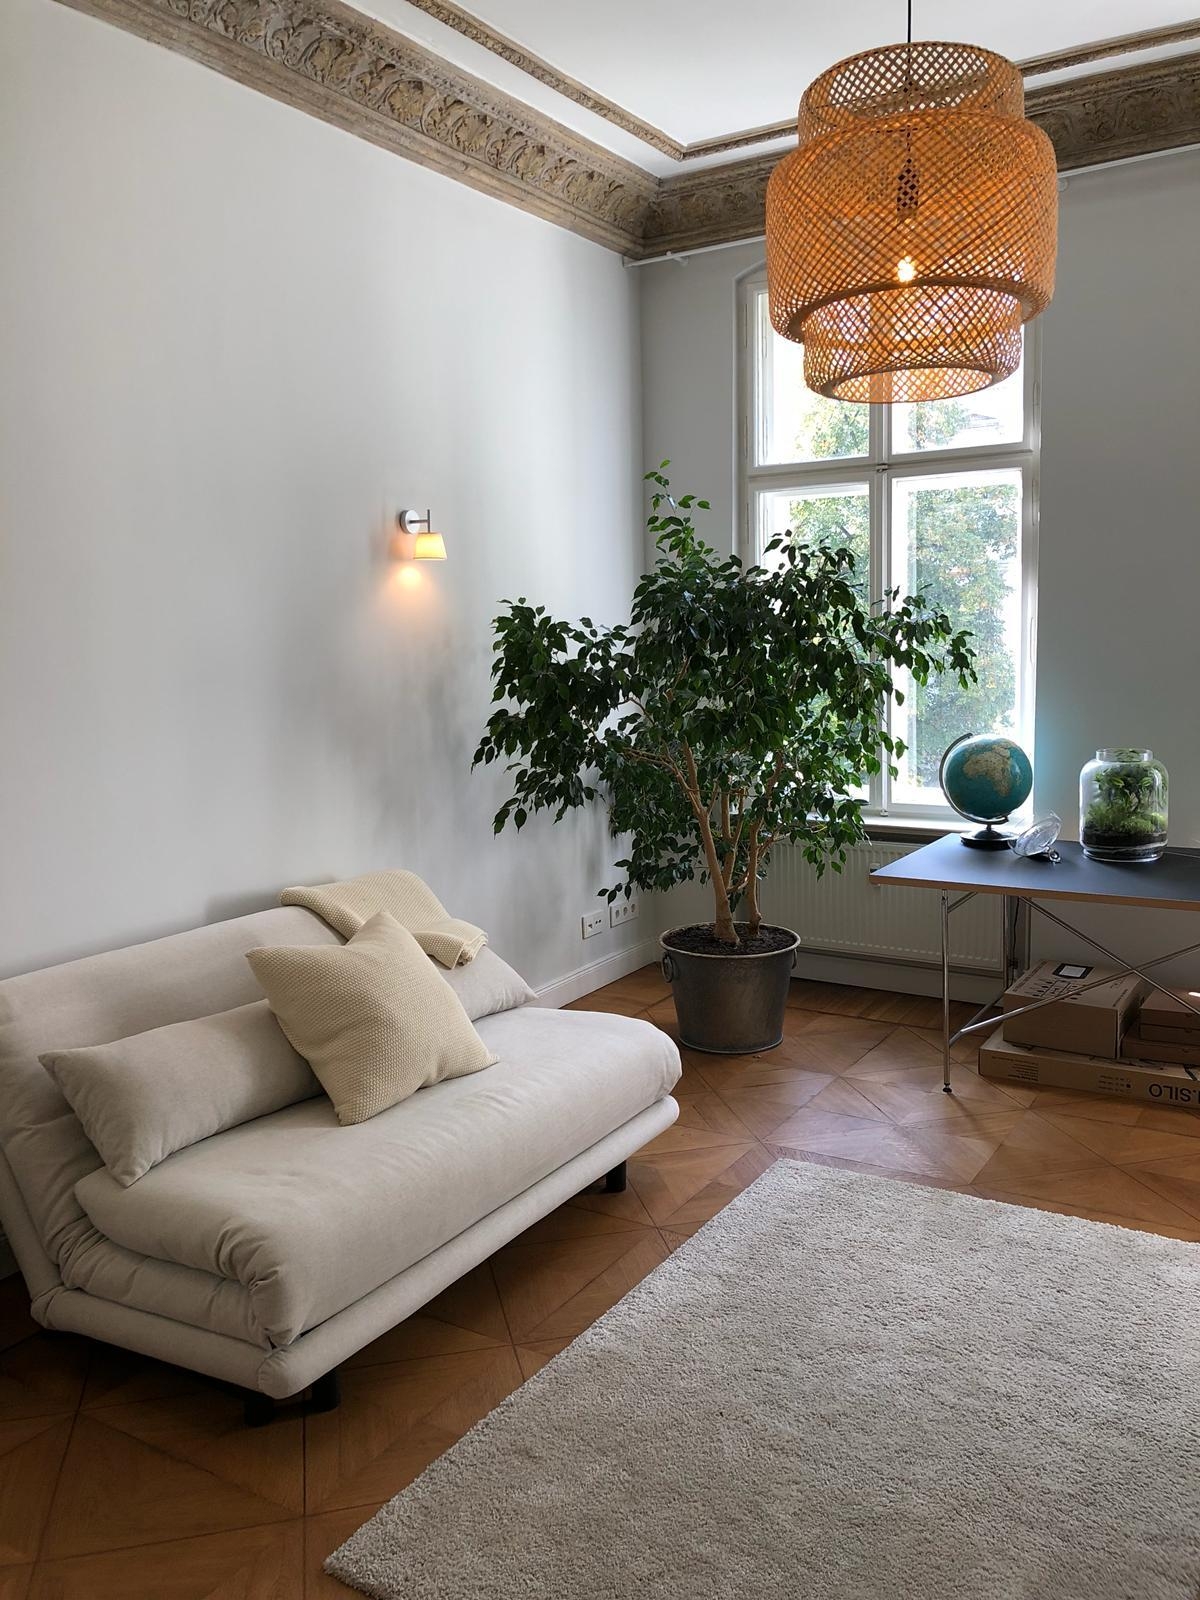 Oh la la wir haben eine neue Lampe #livingchallenge #wohnzimmer ❤️❤️❤️